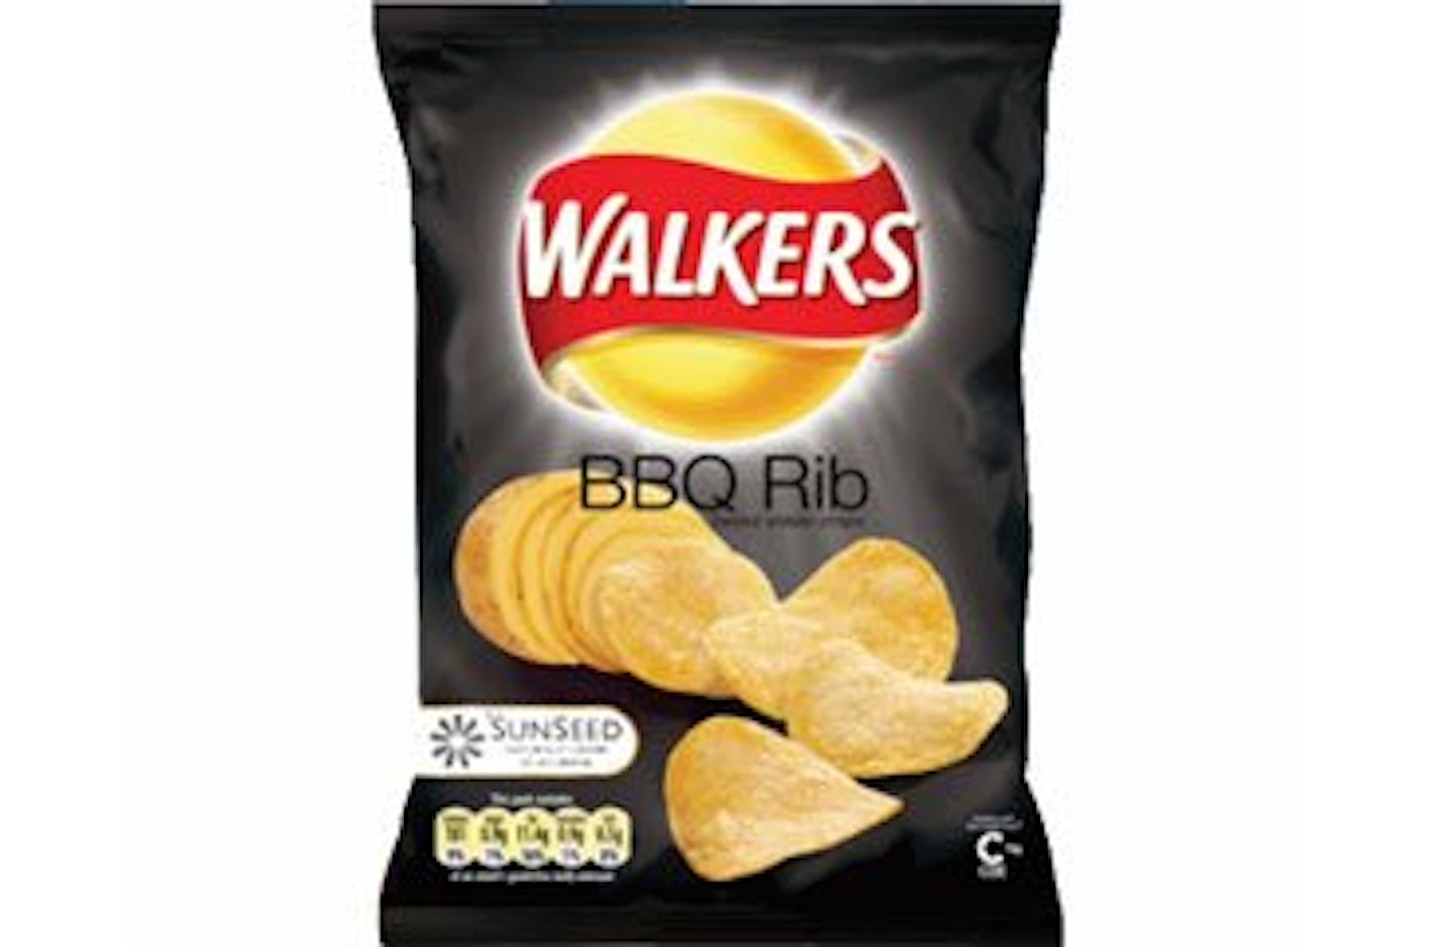 Discontinued crisps Walkers BBQ Crisps